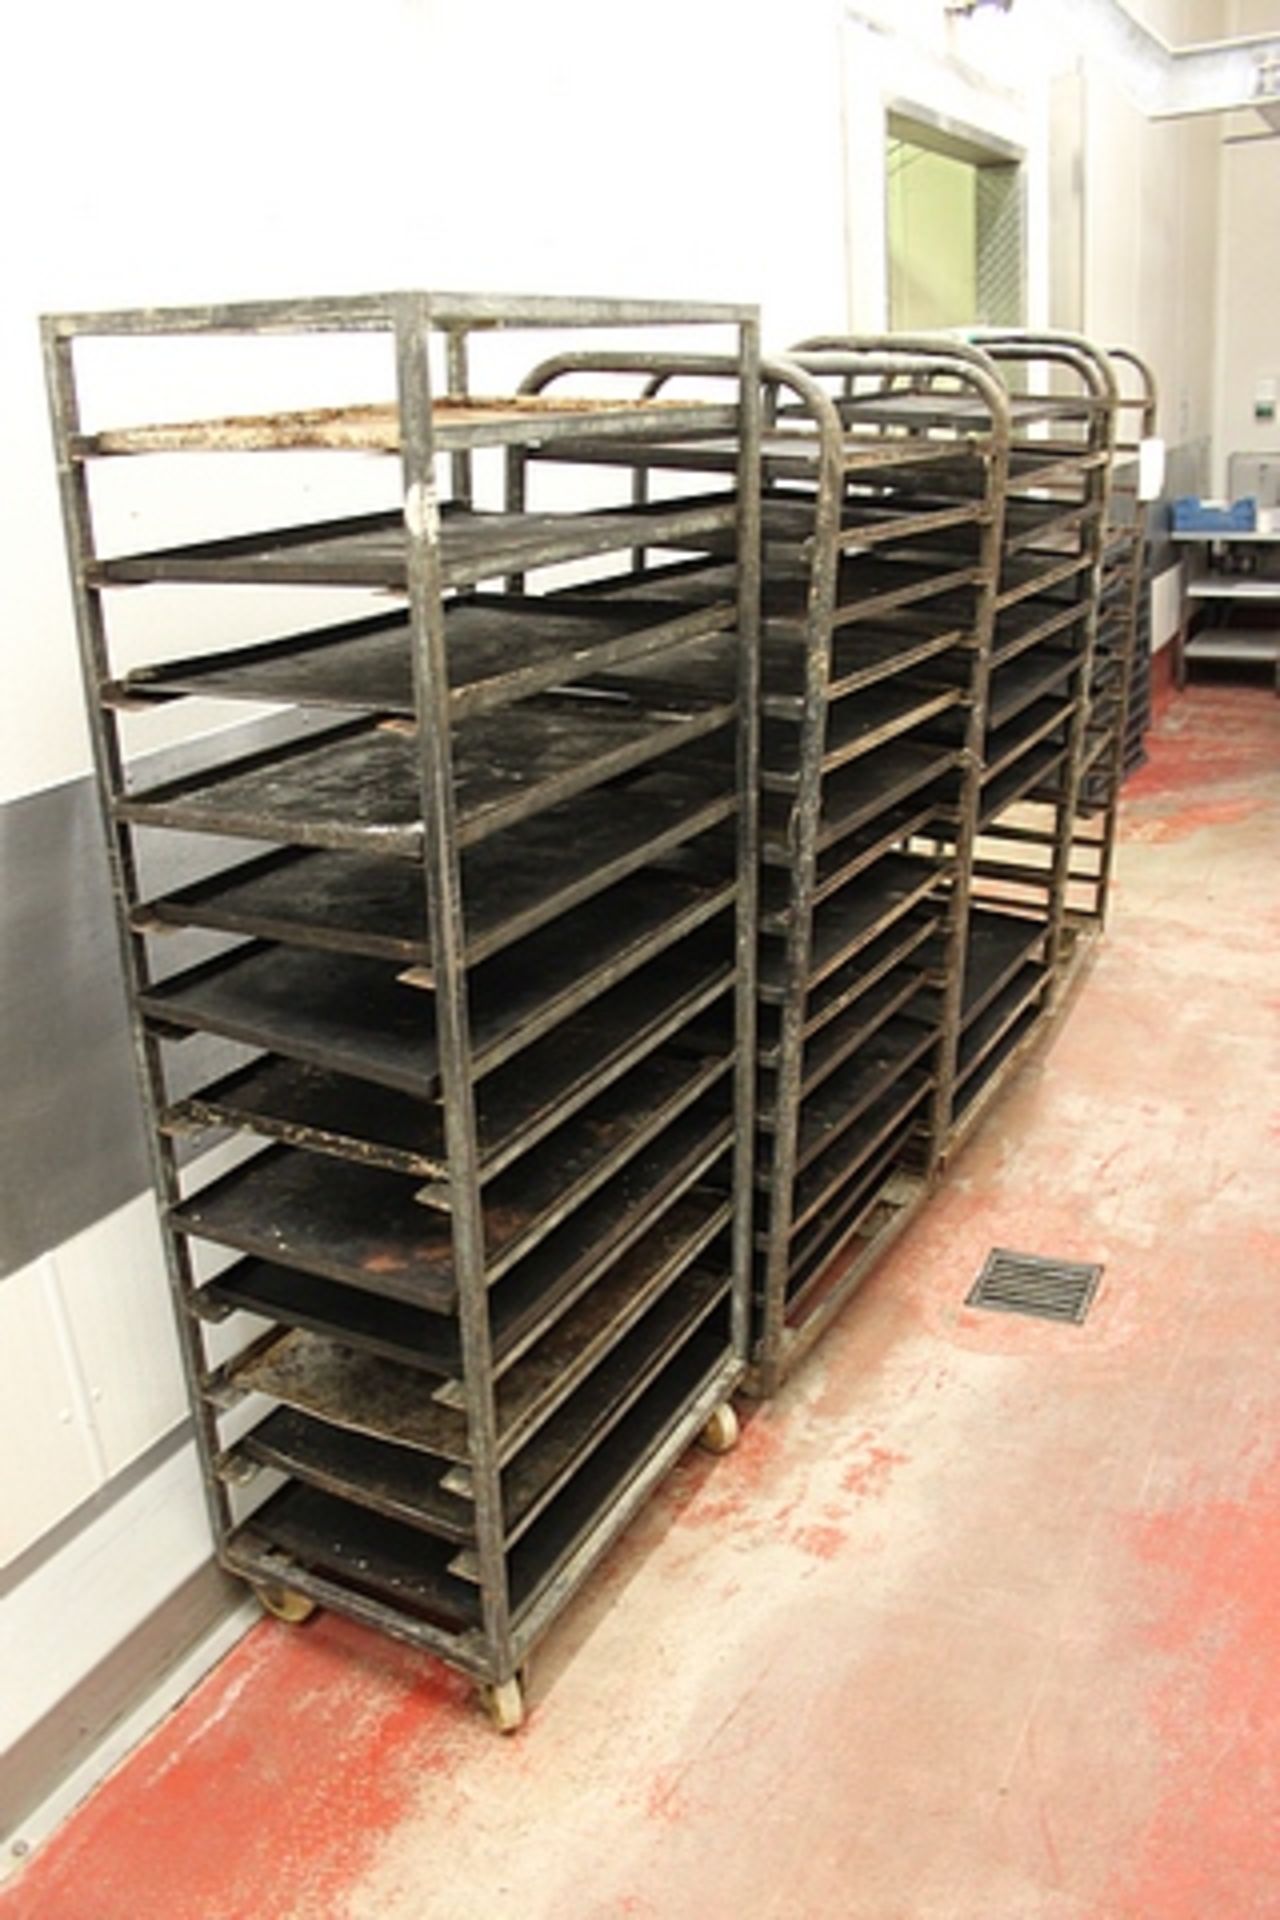 5 x galvansied bakery rack trolleys